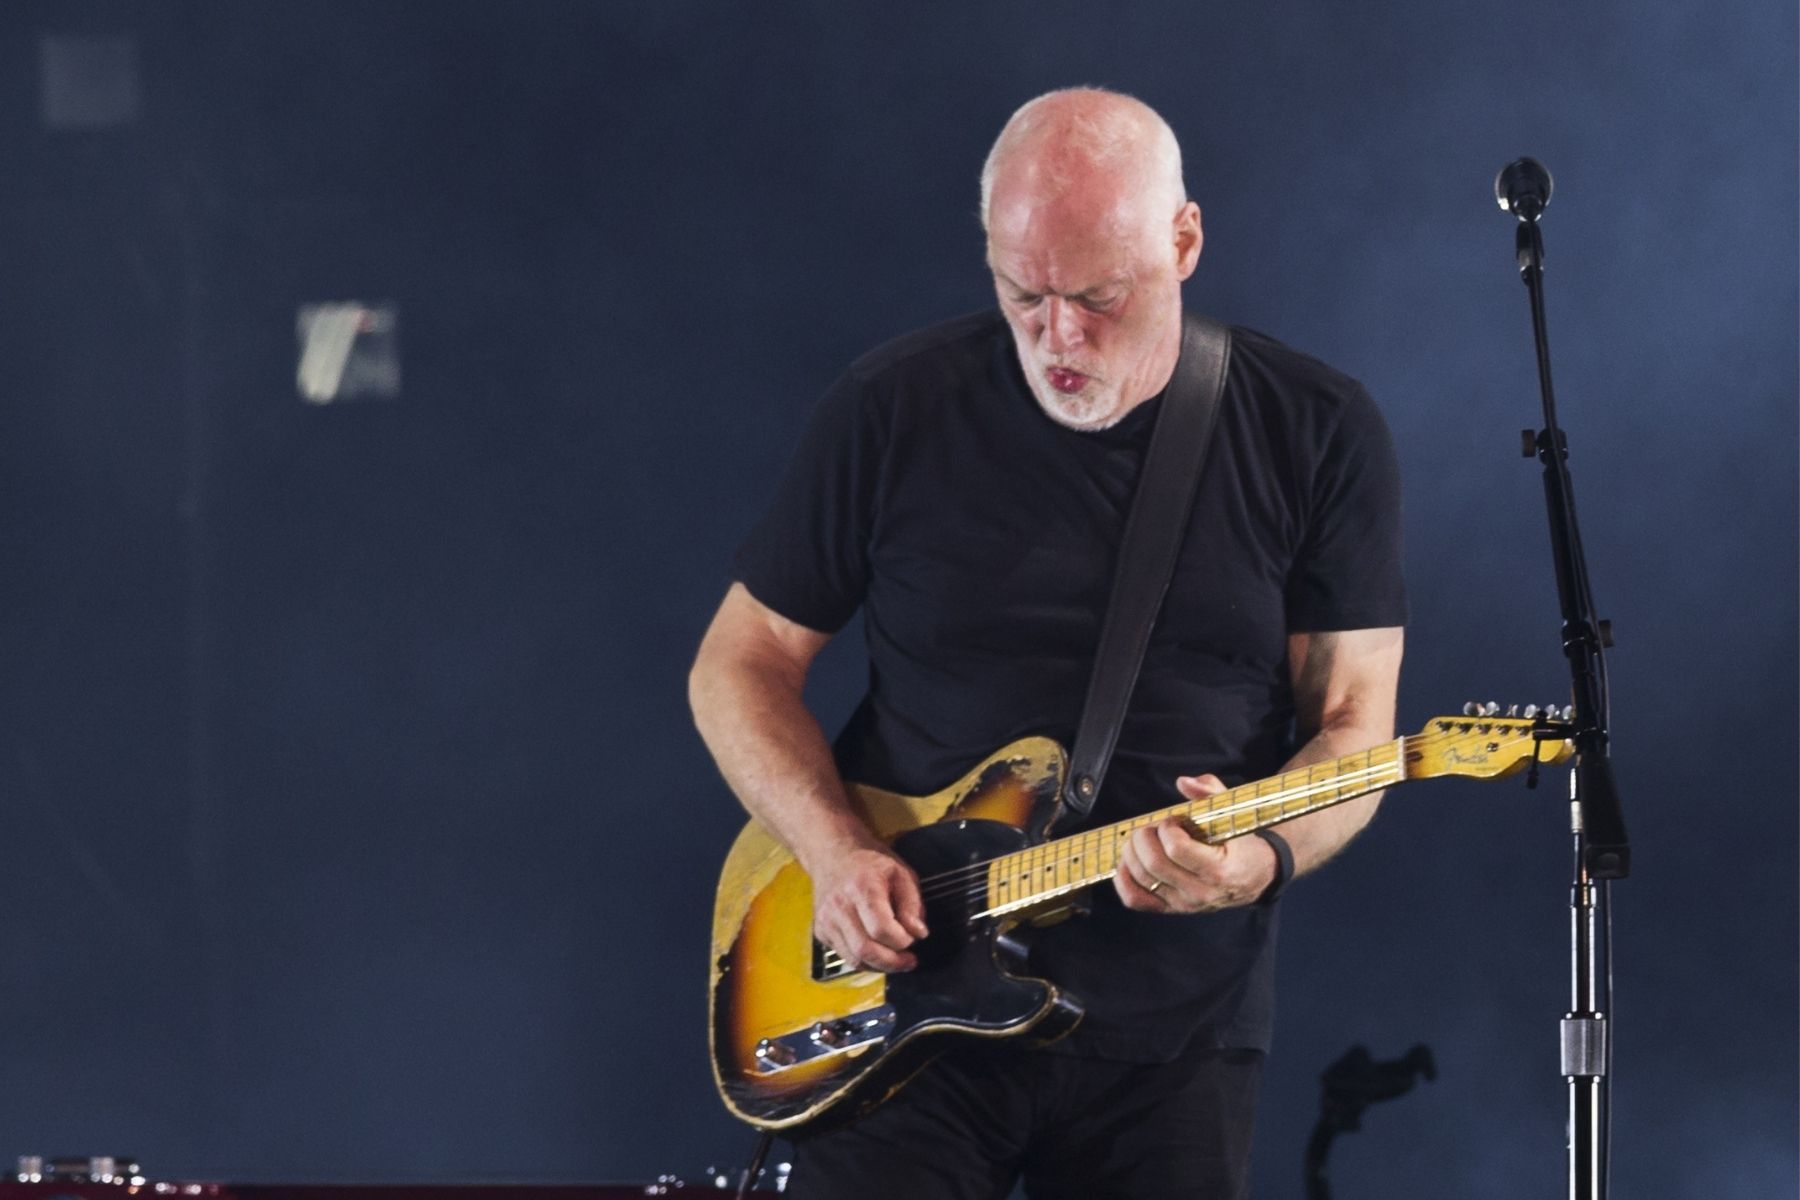 David Gilmour e Nick Mason gravaram 'Hey Hey Rise Up' em parceria com Andriy Khlyvnyuk, cantor ucraniano cujo vídeo viralizou durante a guerra; ouça